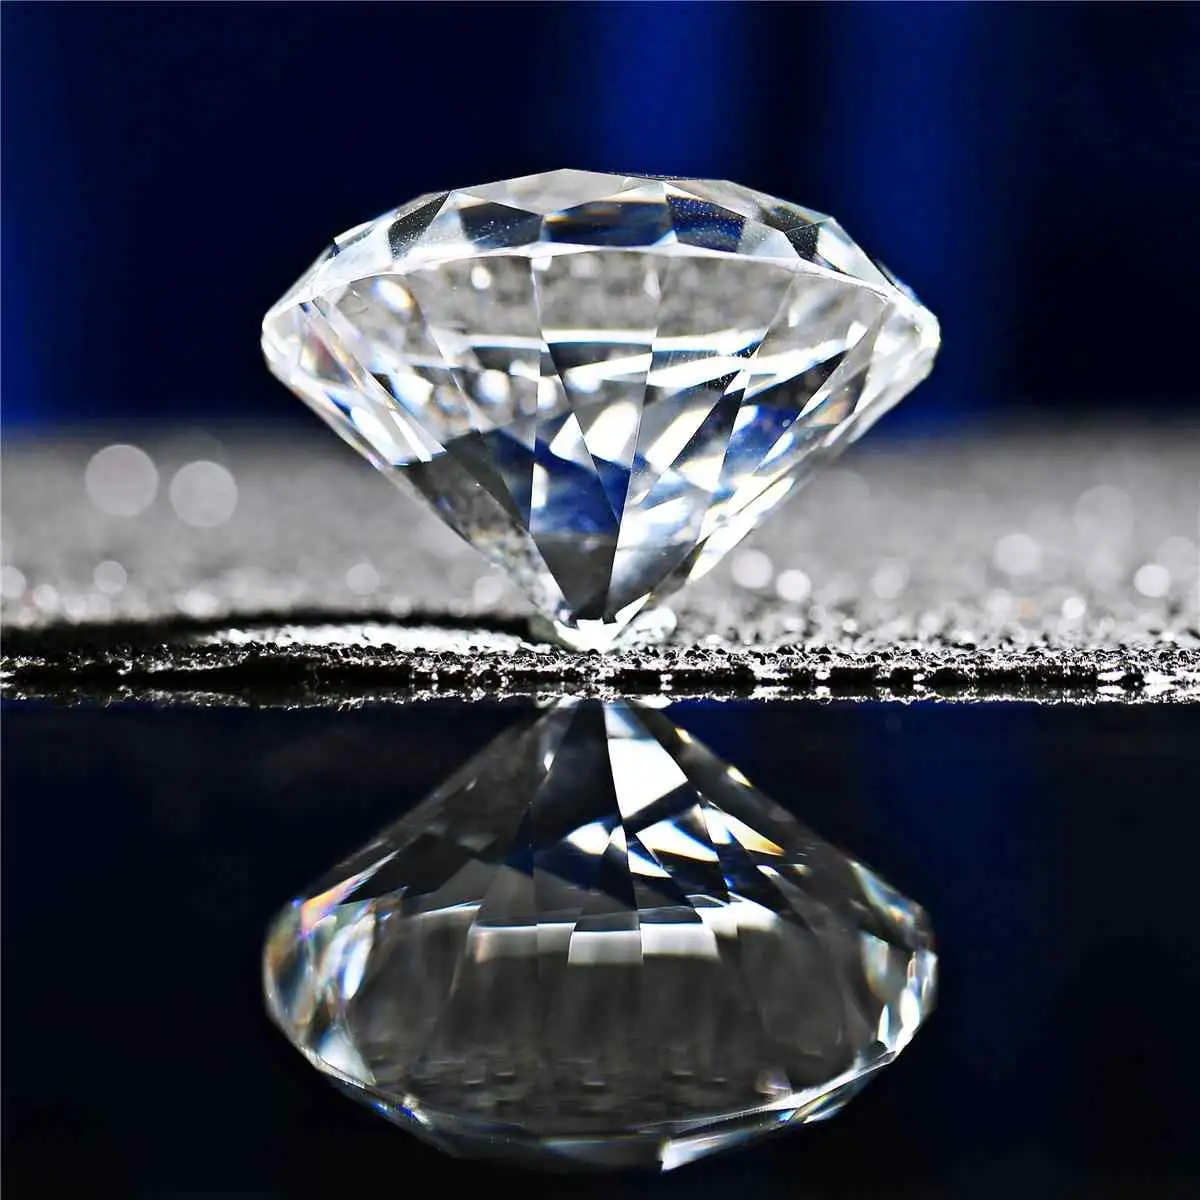 Honor of crystal K9 Wedding Feng Shui regali di nozze diamanti decorativi in cristallo di cristallo